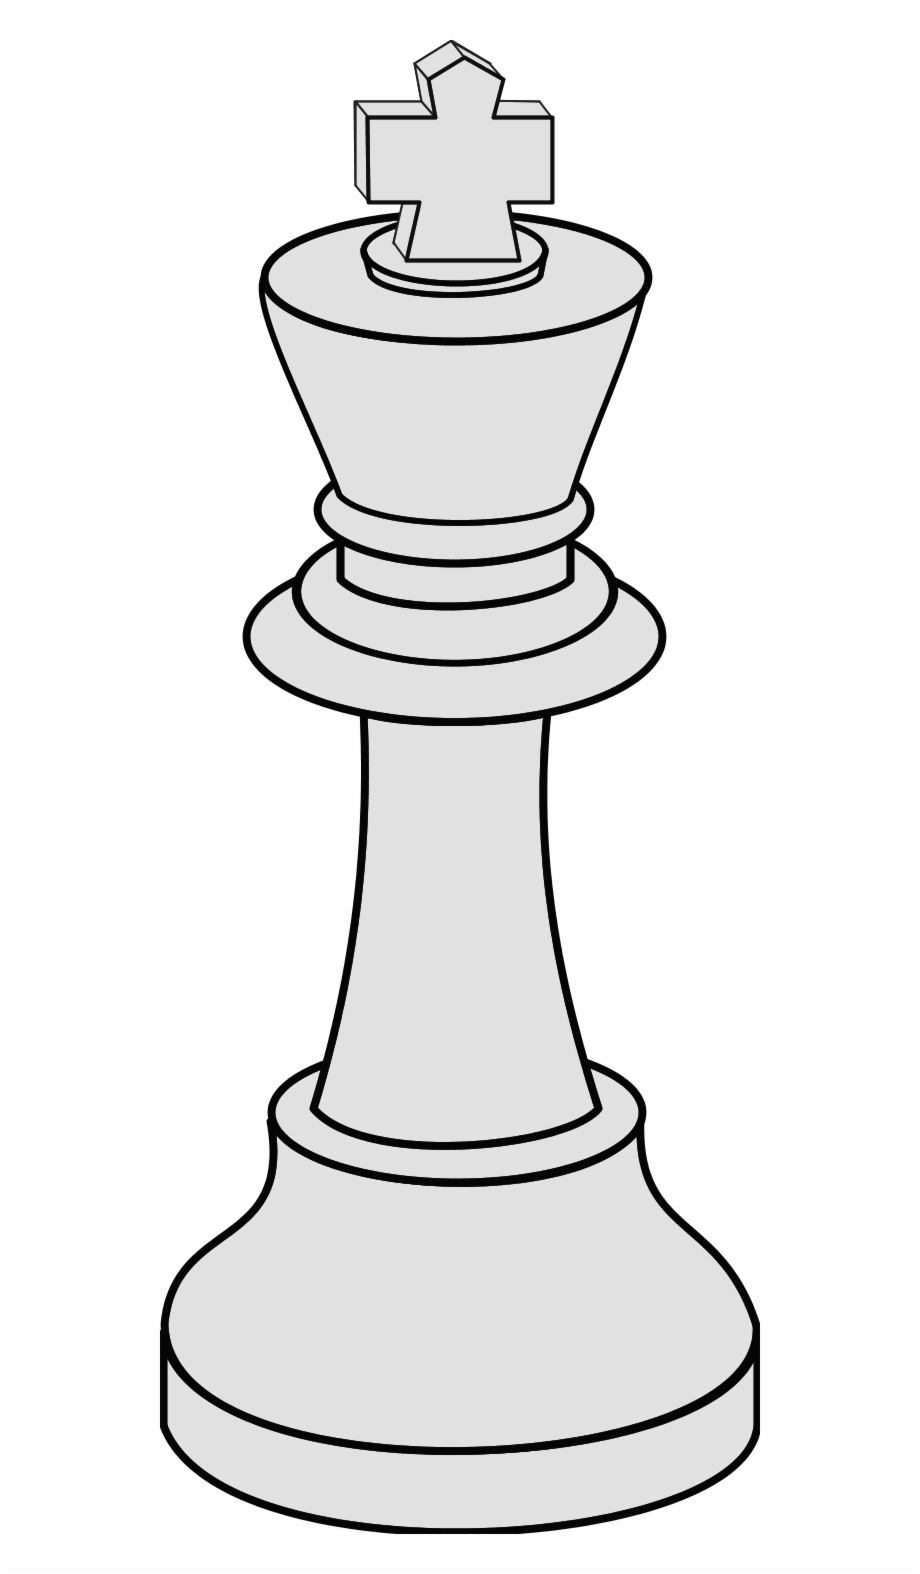 White king chess.